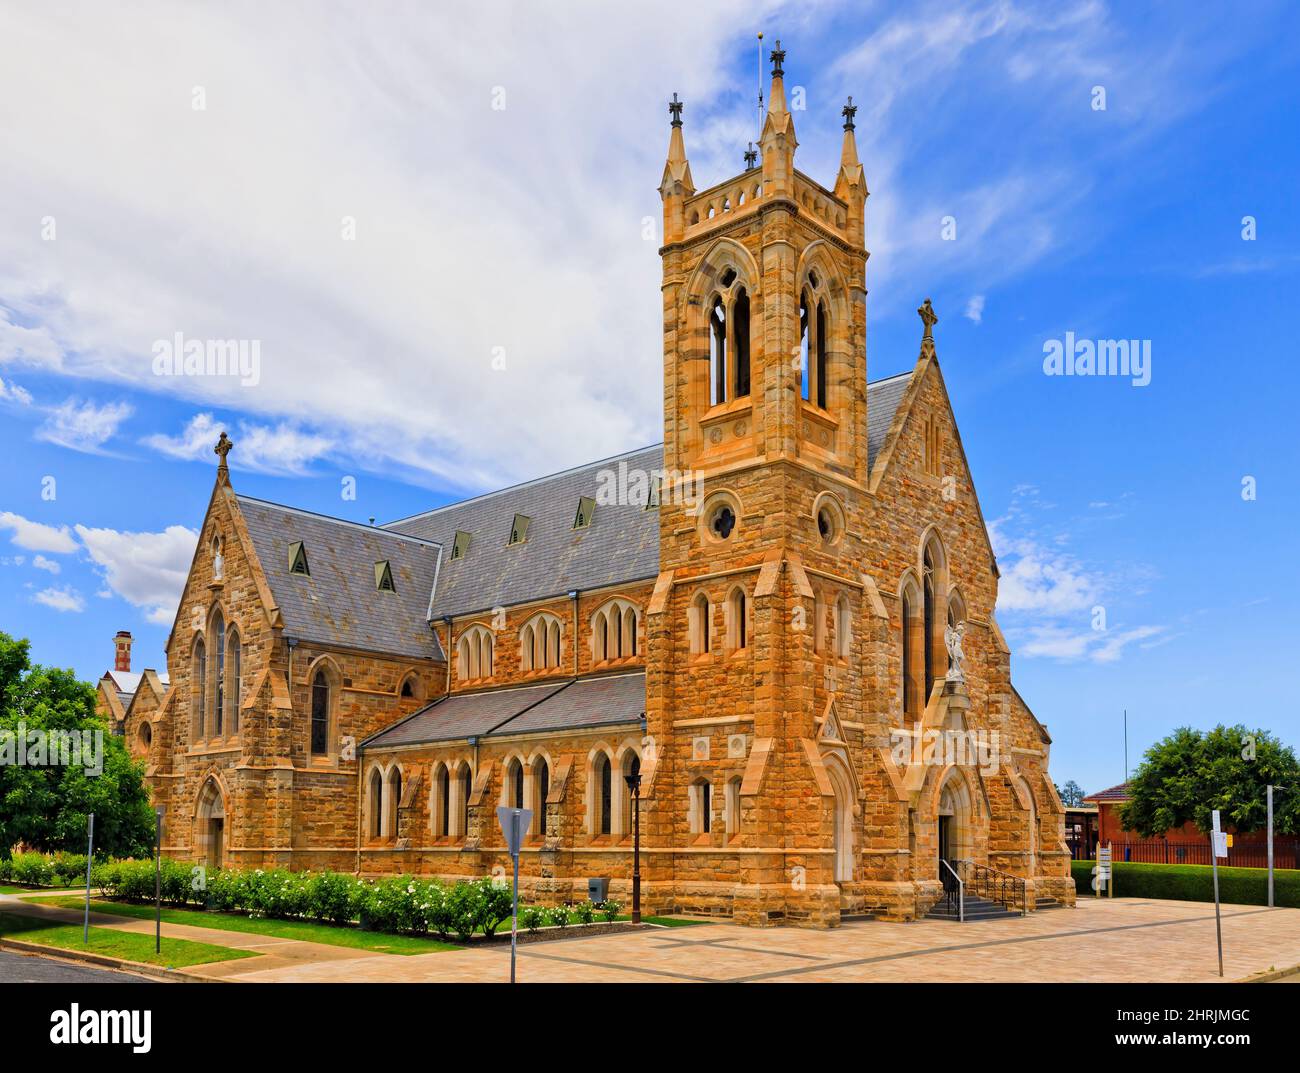 Ingresso al patrimonio storico della cattedrale cattolica cristiana in Wagga Wagga, città rurale regionale dell'Australia. Foto Stock